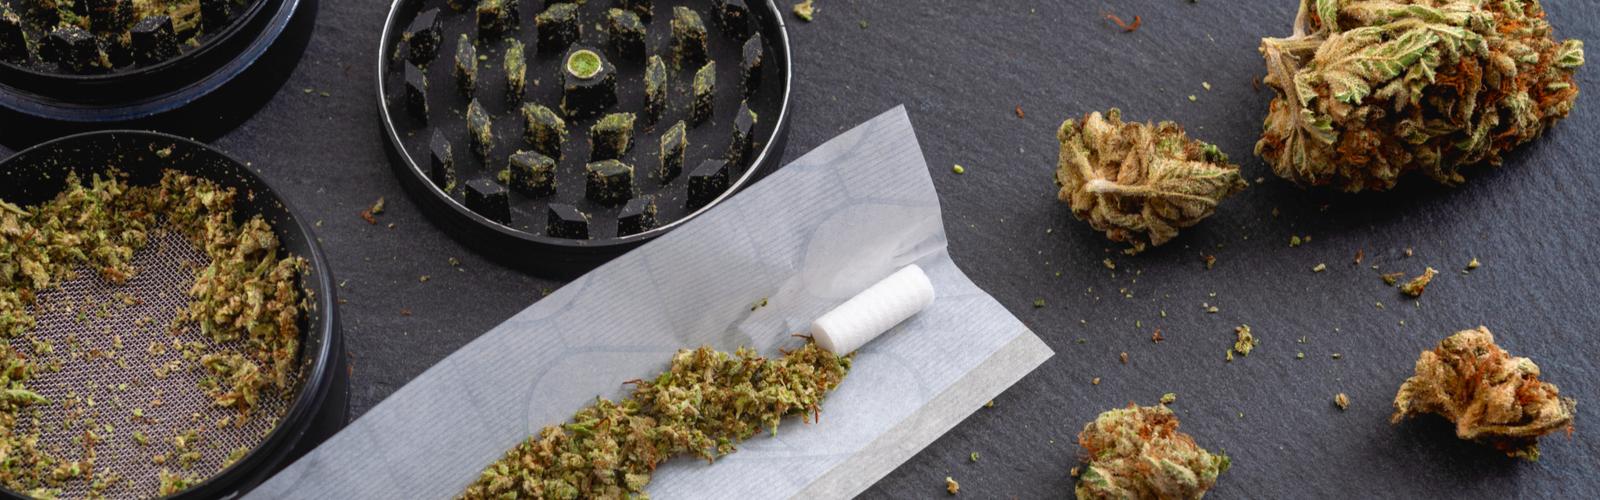 Guide basique pour rouler un joint de cannabis- Alchimia Grow Shop